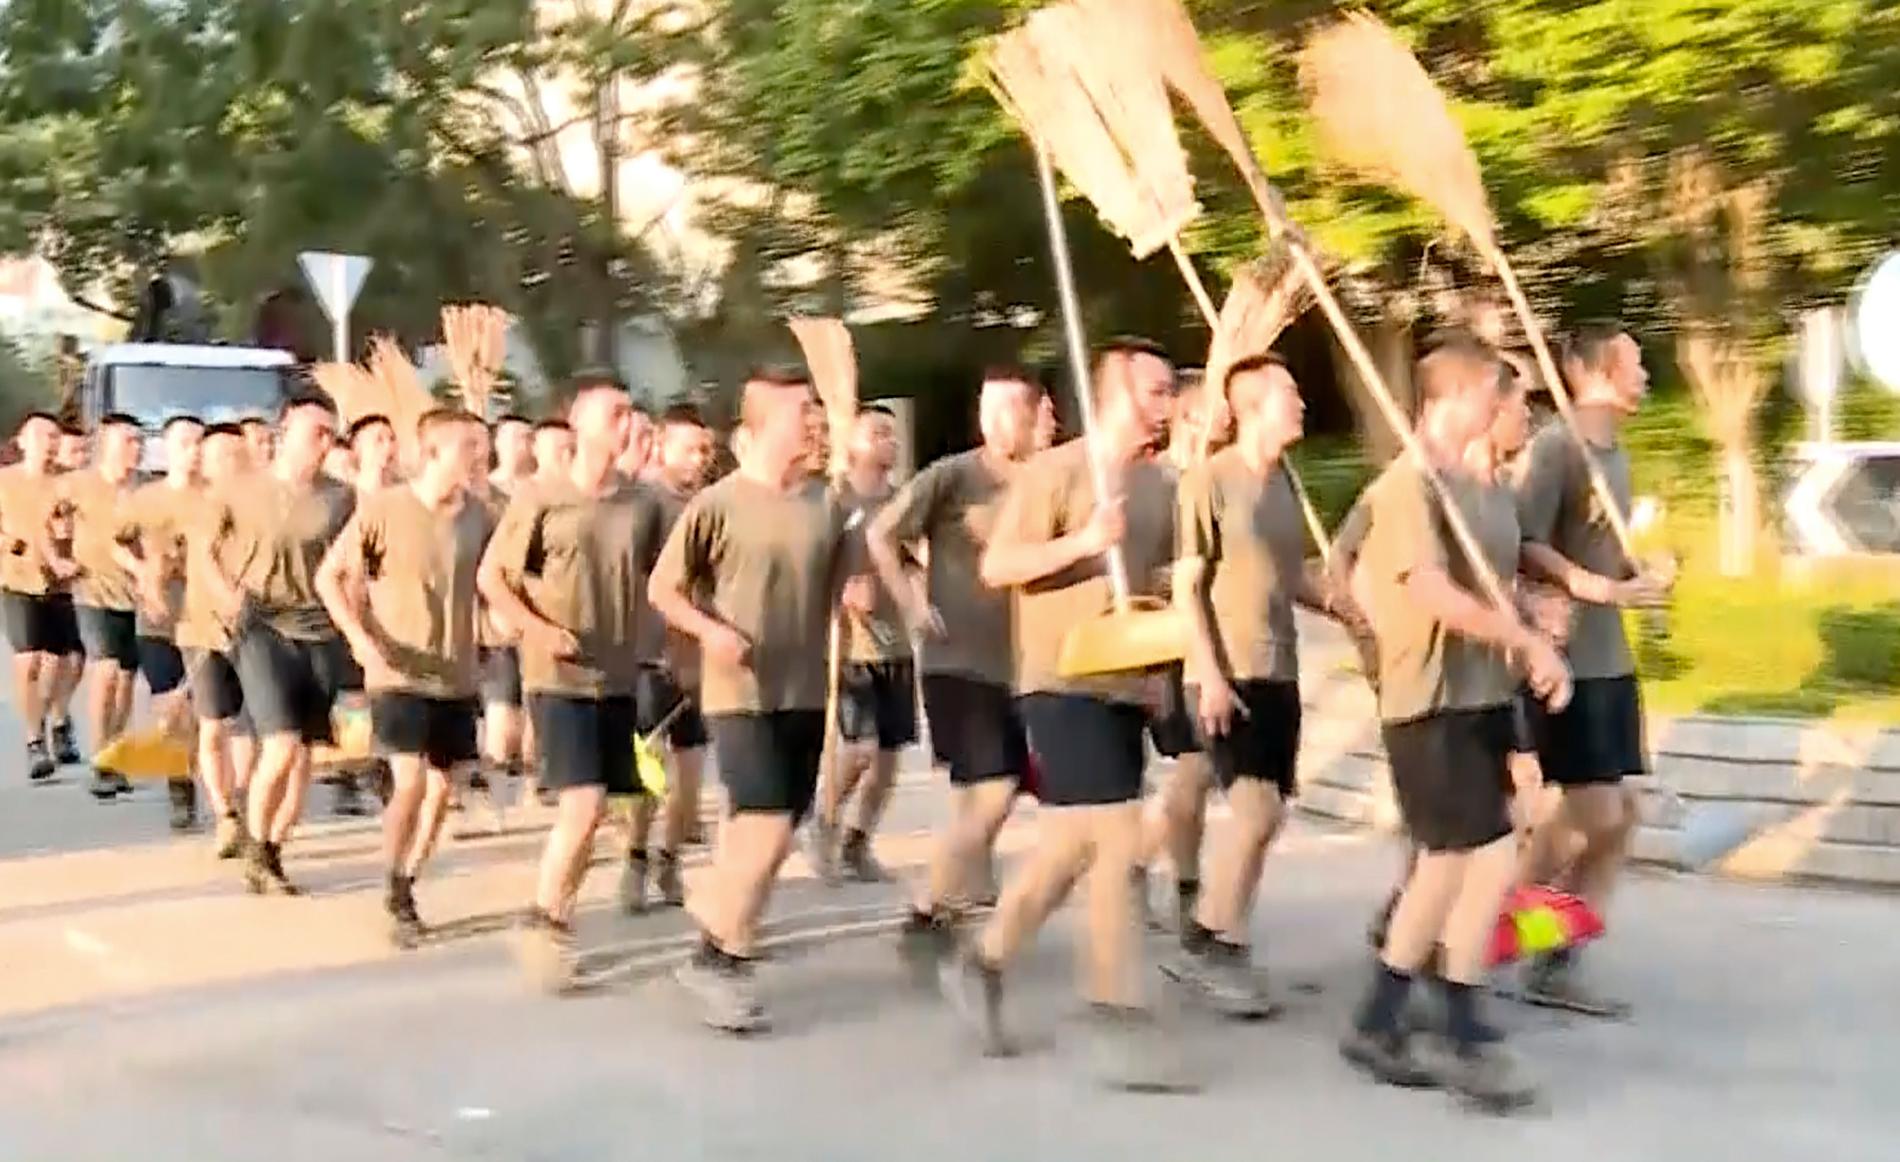 En bild från en videoupptagning visar kinesiska soldater med kvastar som anländer för att städa gator i Hongkong på lördagen.